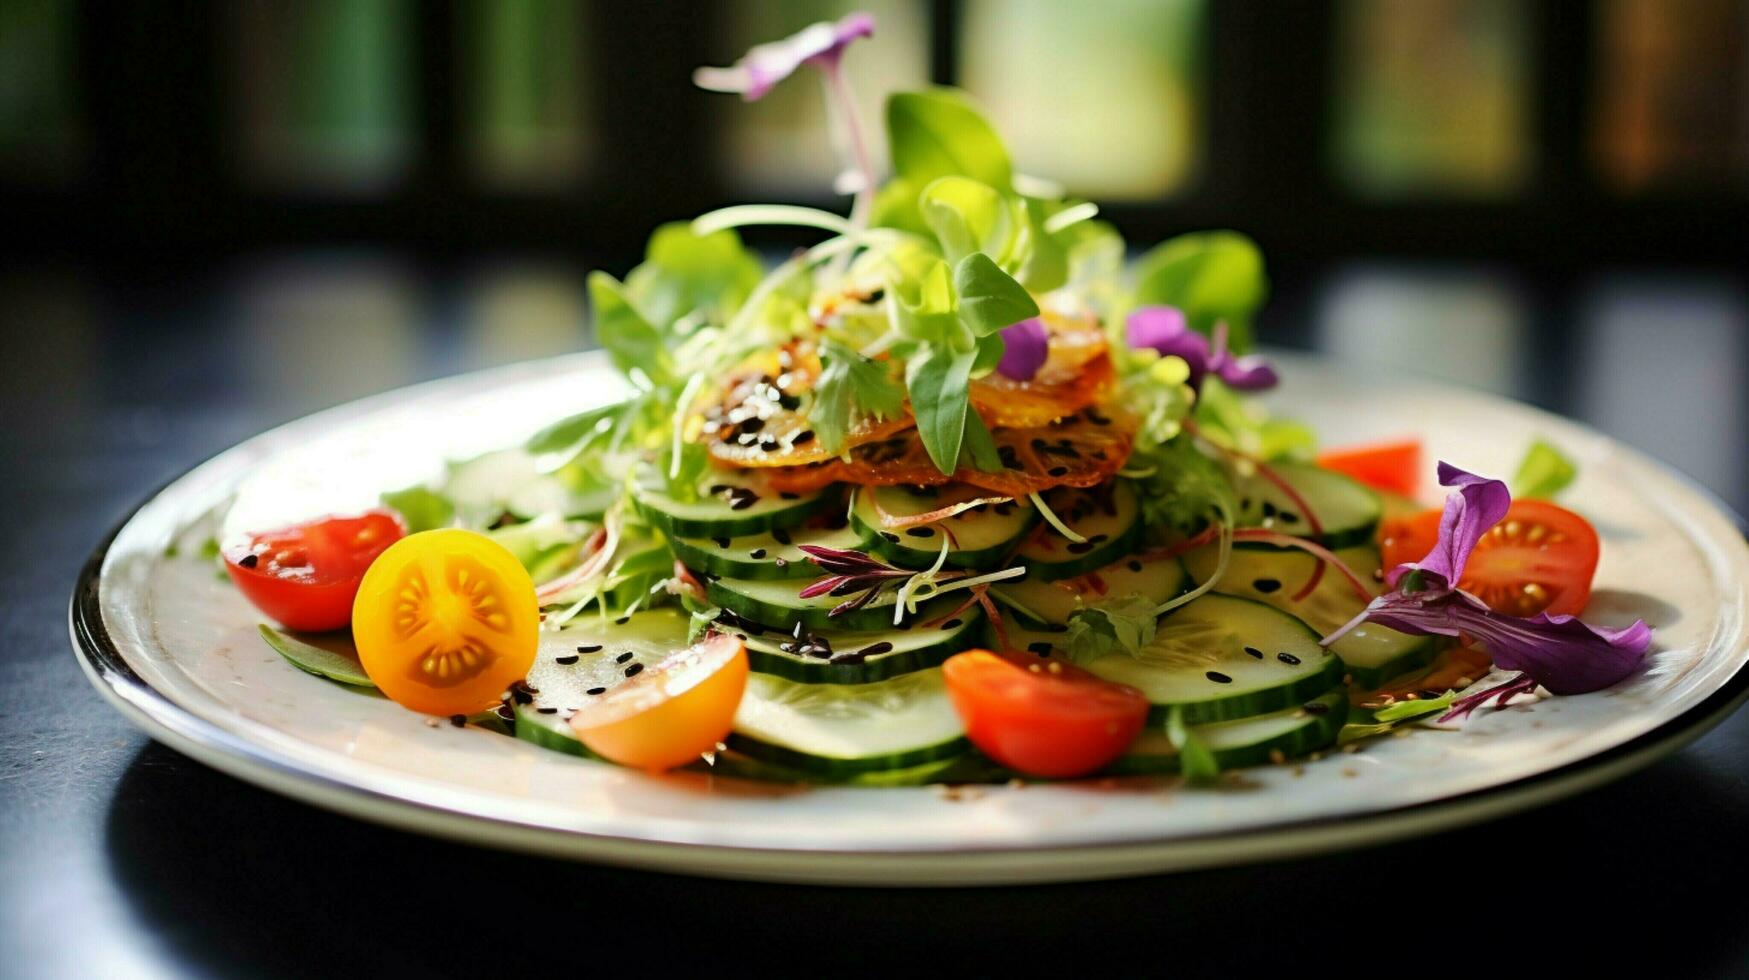 Frais salade sur une assiette une en bonne santé gourmet végétarien repas photo